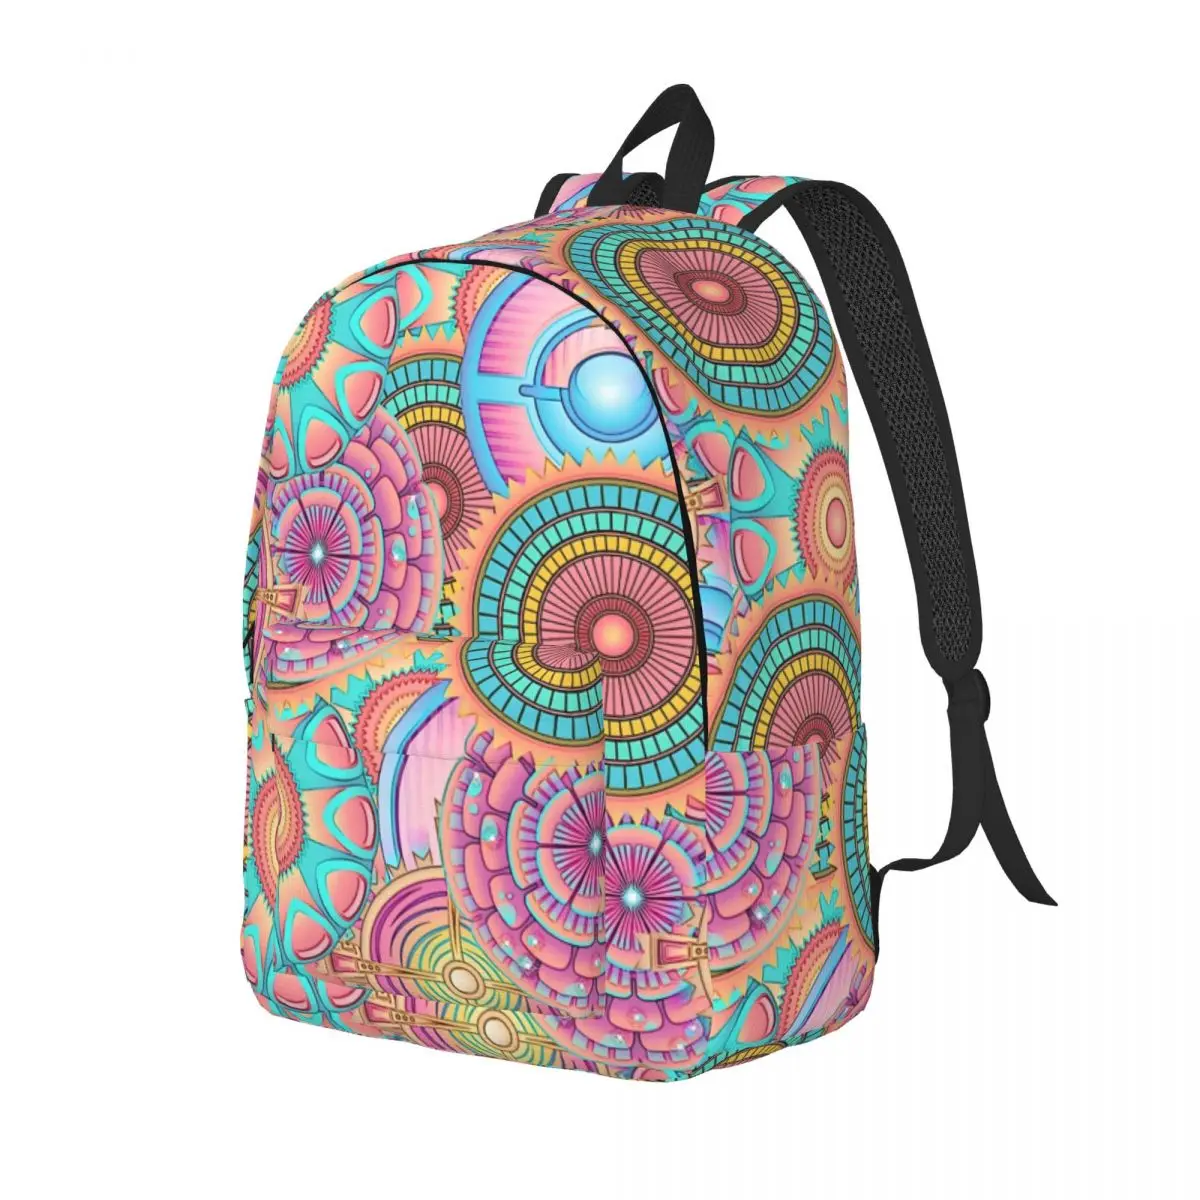 

Красивый рюкзак с рисунком мандалы, рюкзаки для трекинга с абстрактным цветочным принтом, школьные ранцы для студентов в уличном стиле, рюкзак с индивидуальным рисунком